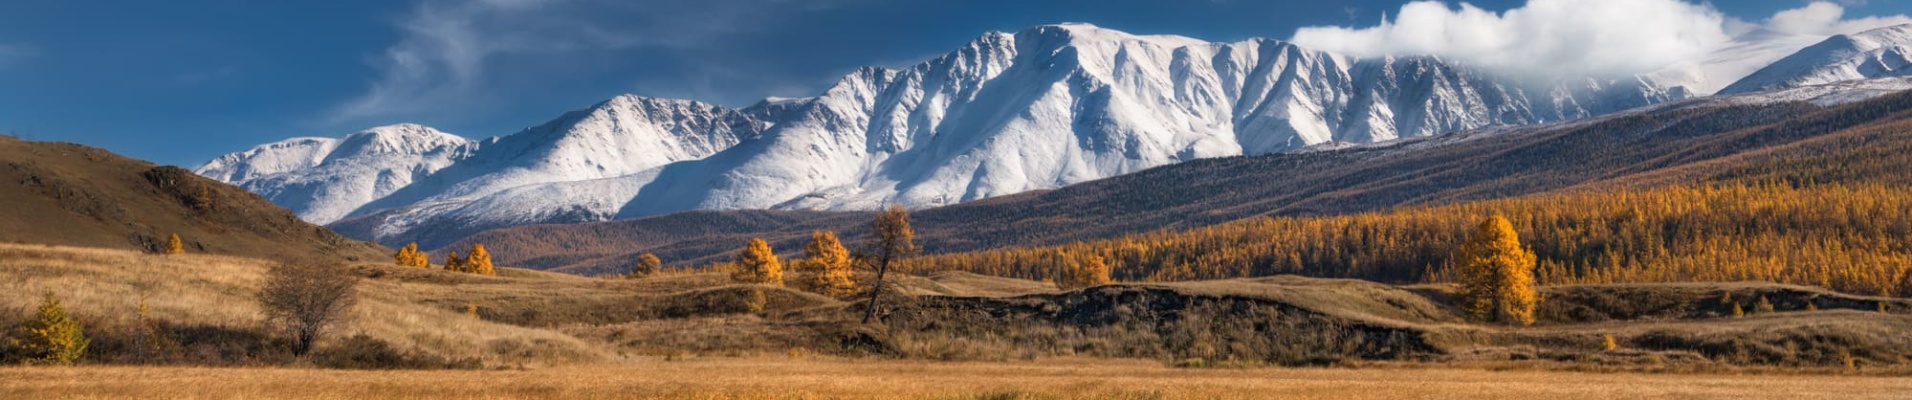 Paysages de montagnes, Altaï, Russie